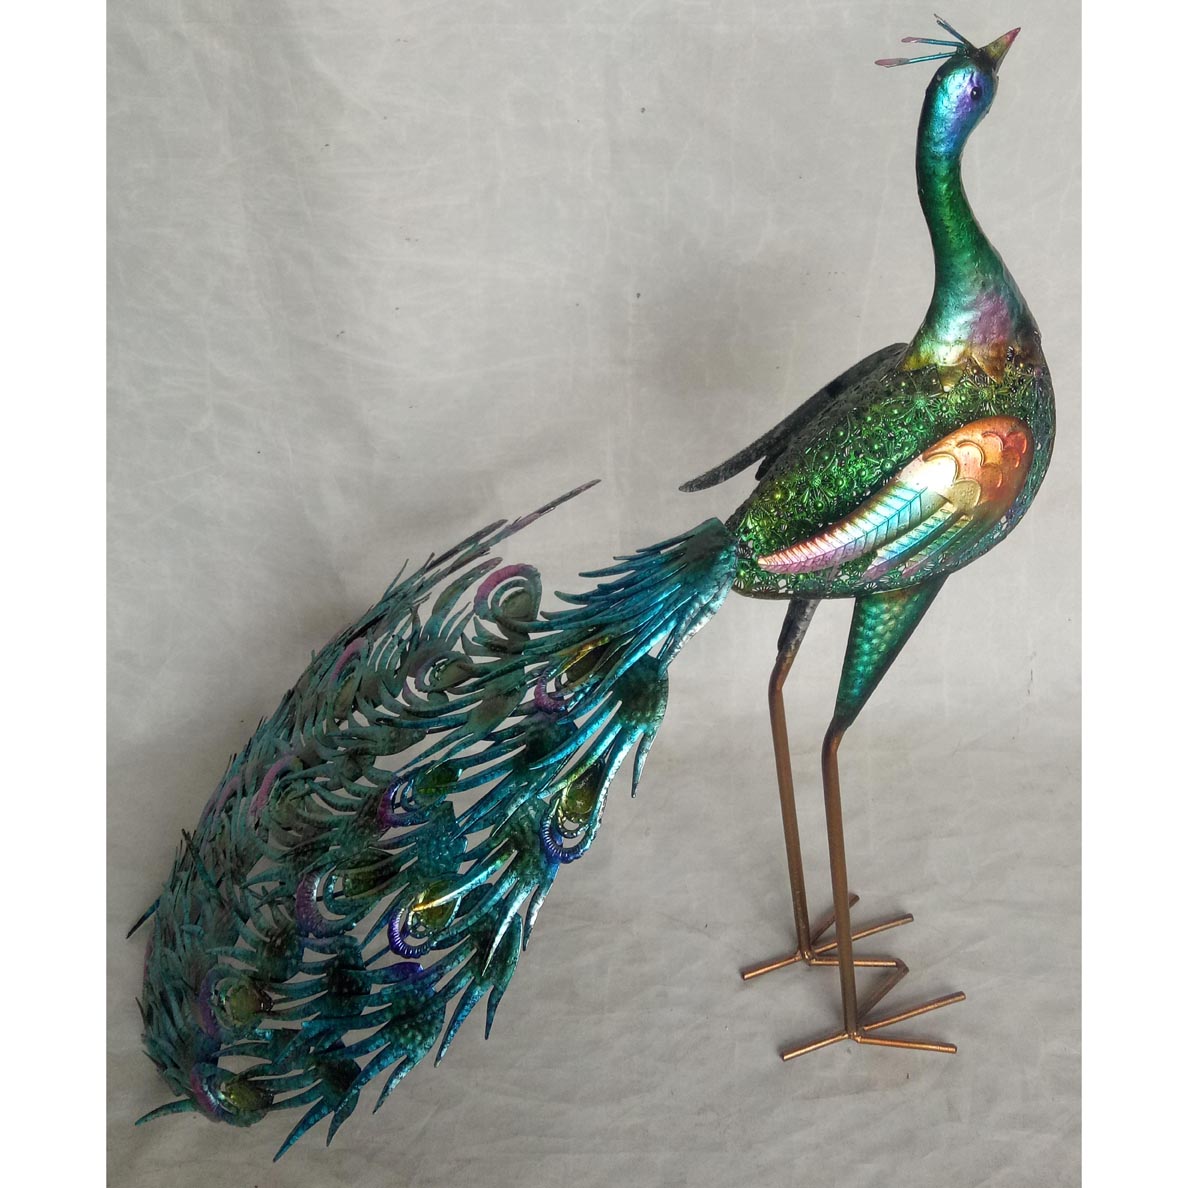 Hand-made metal garden decor peacock ornament